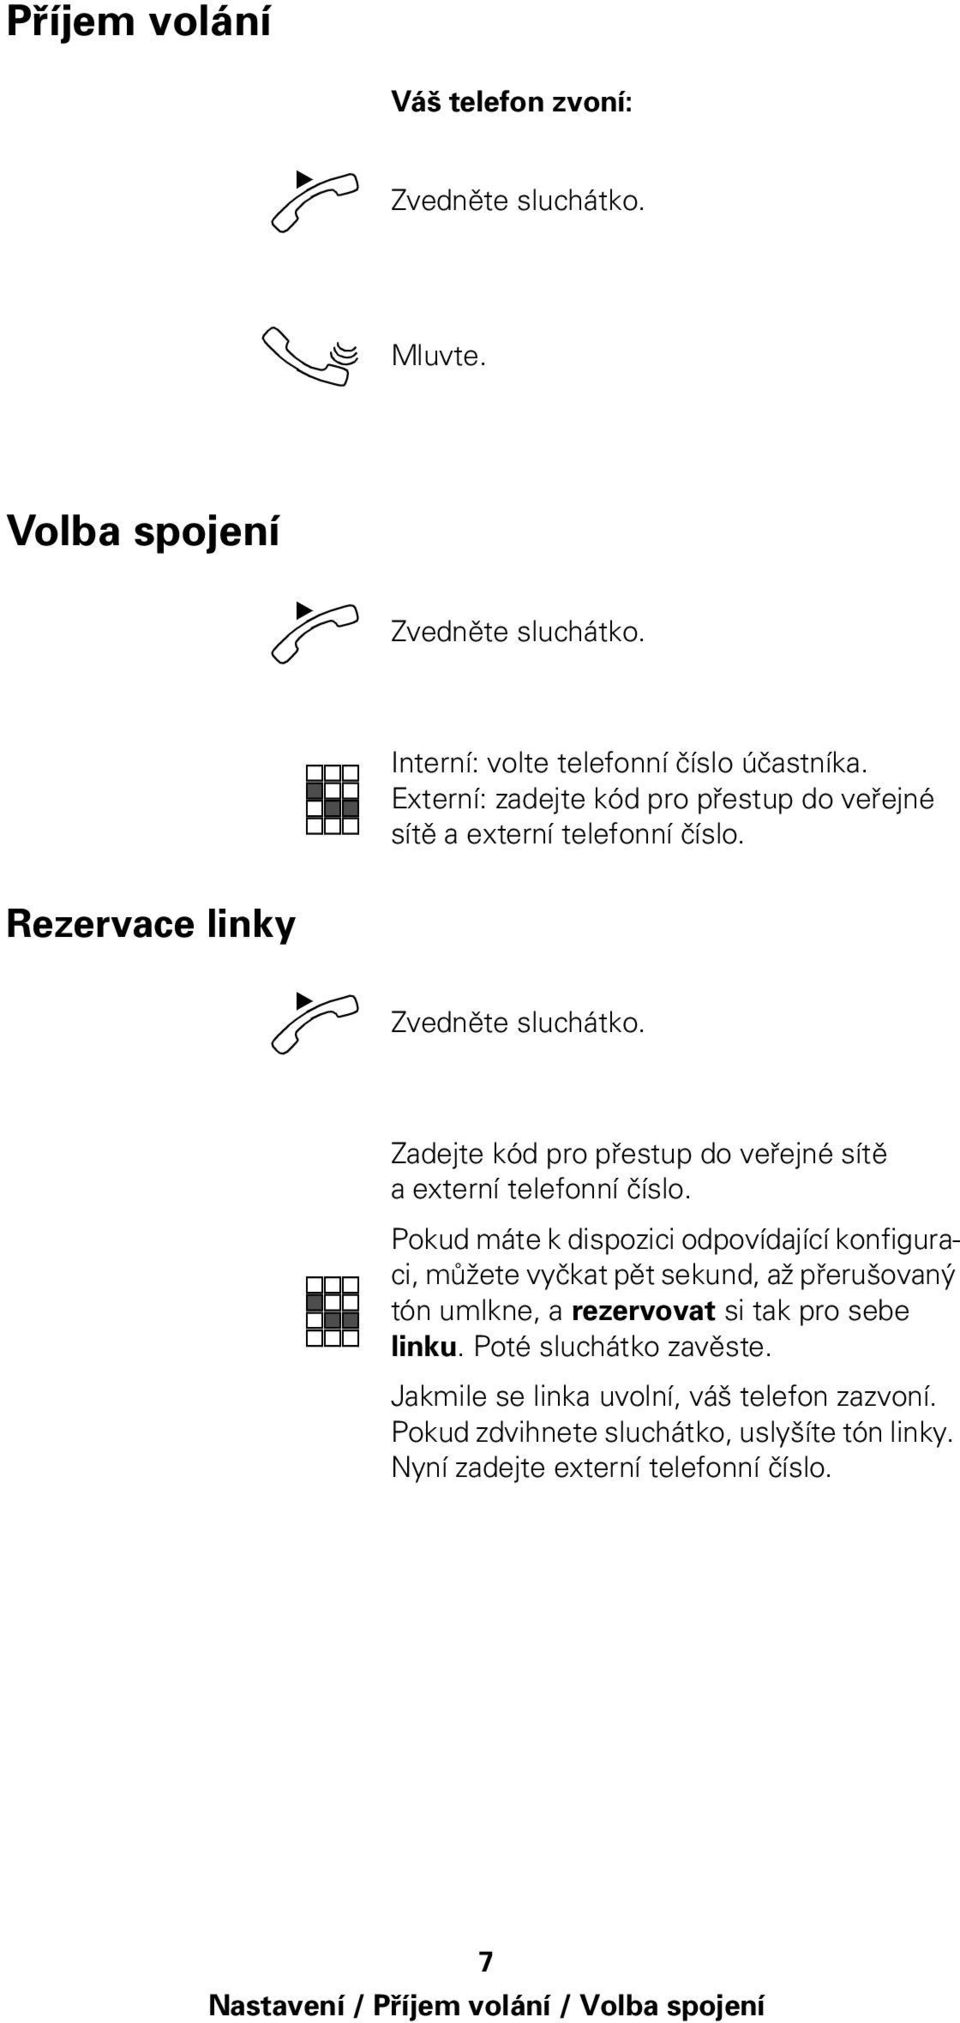 Rezervace linky pro přestup do veřejné sítě a externí telefonní číslo.